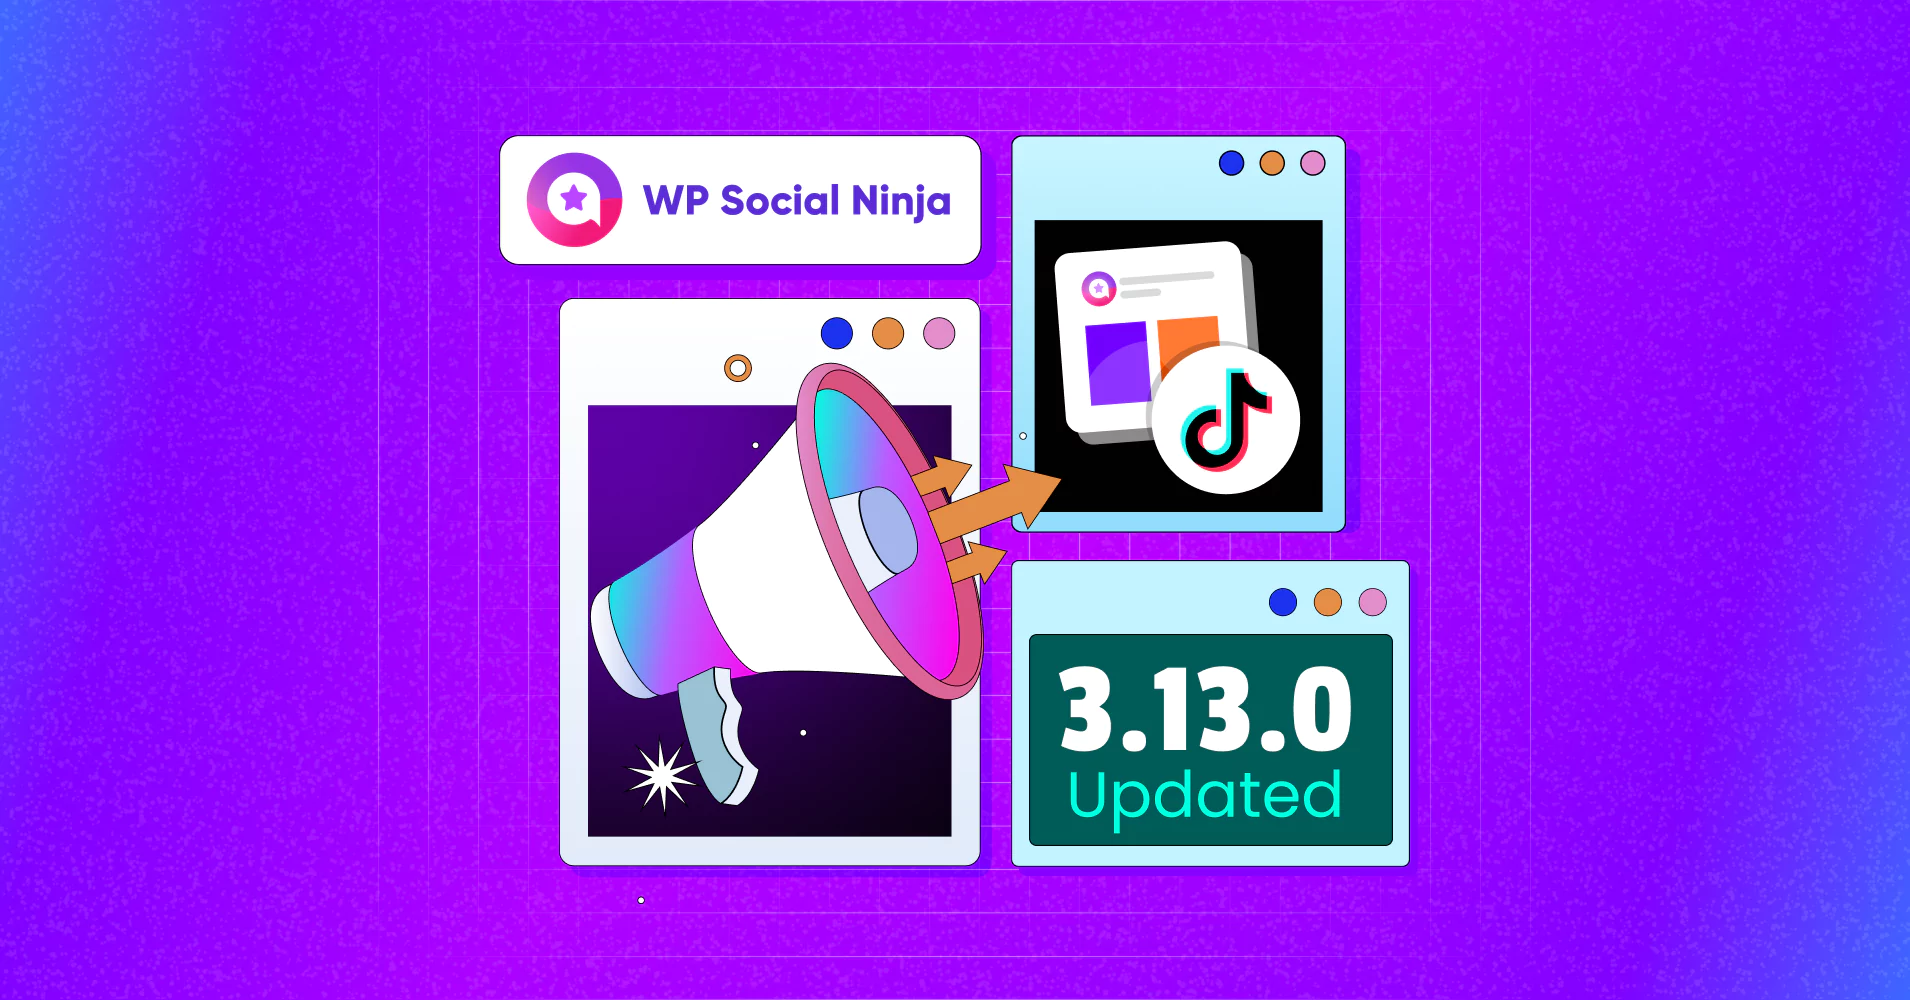 WP Social Ninja 3.13.0